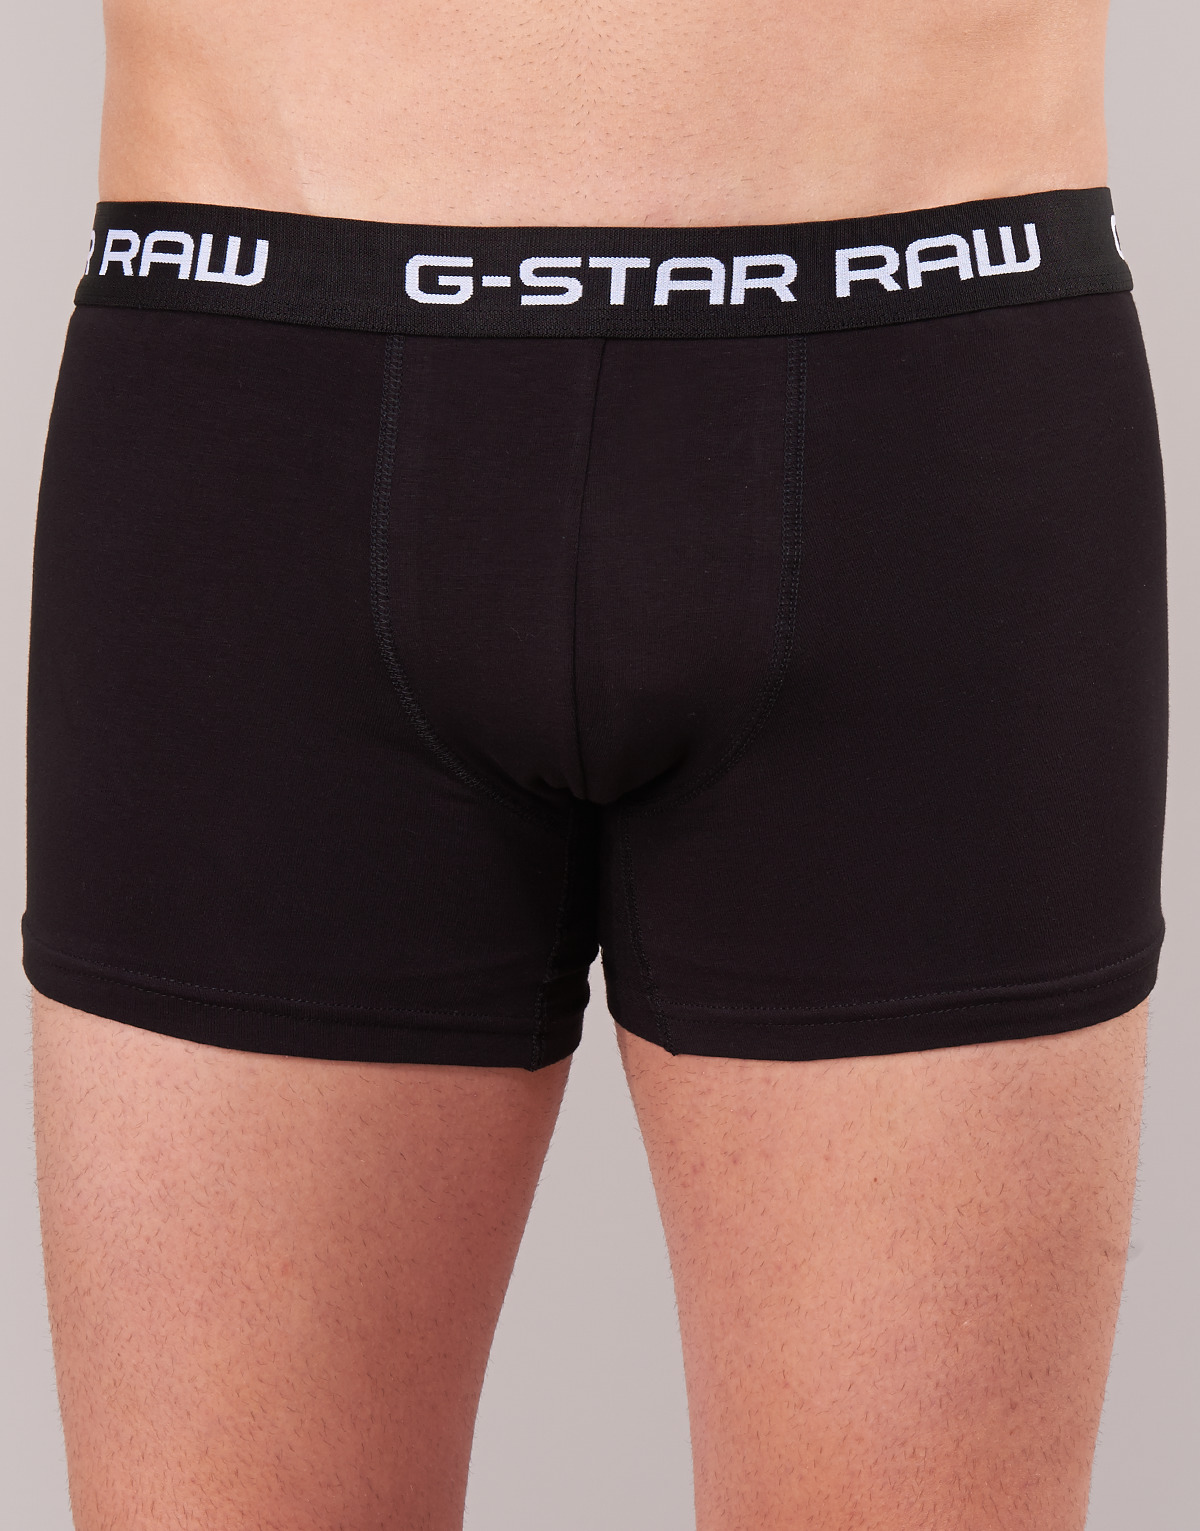 G-Star Raw Noir CLASSIC TRUNK 3 PACK sogBbX12